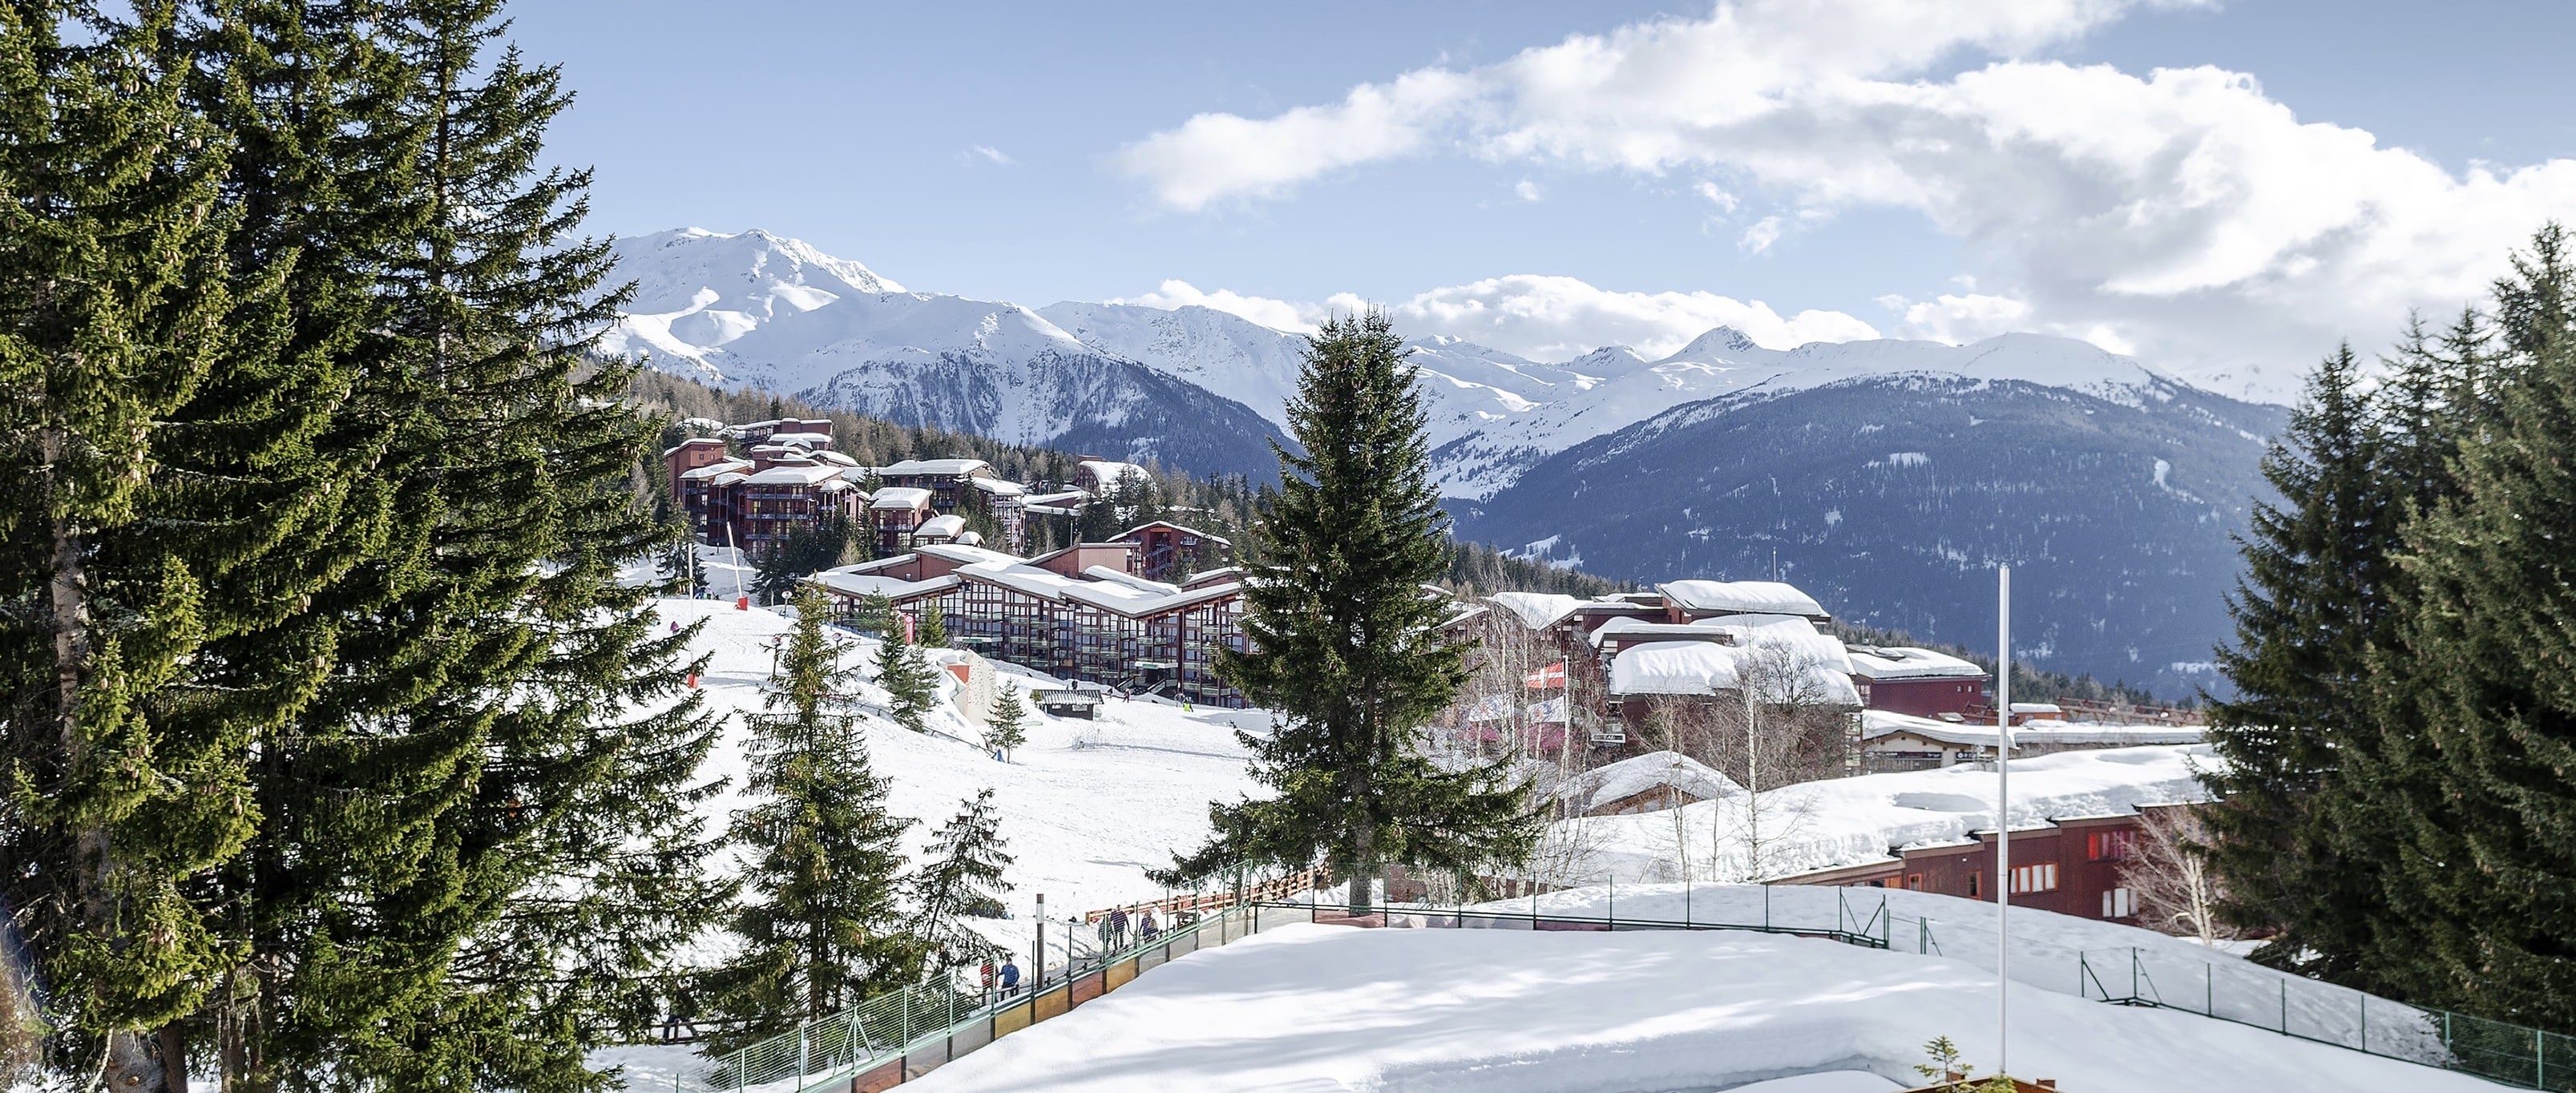 buy ski resorts in mountains